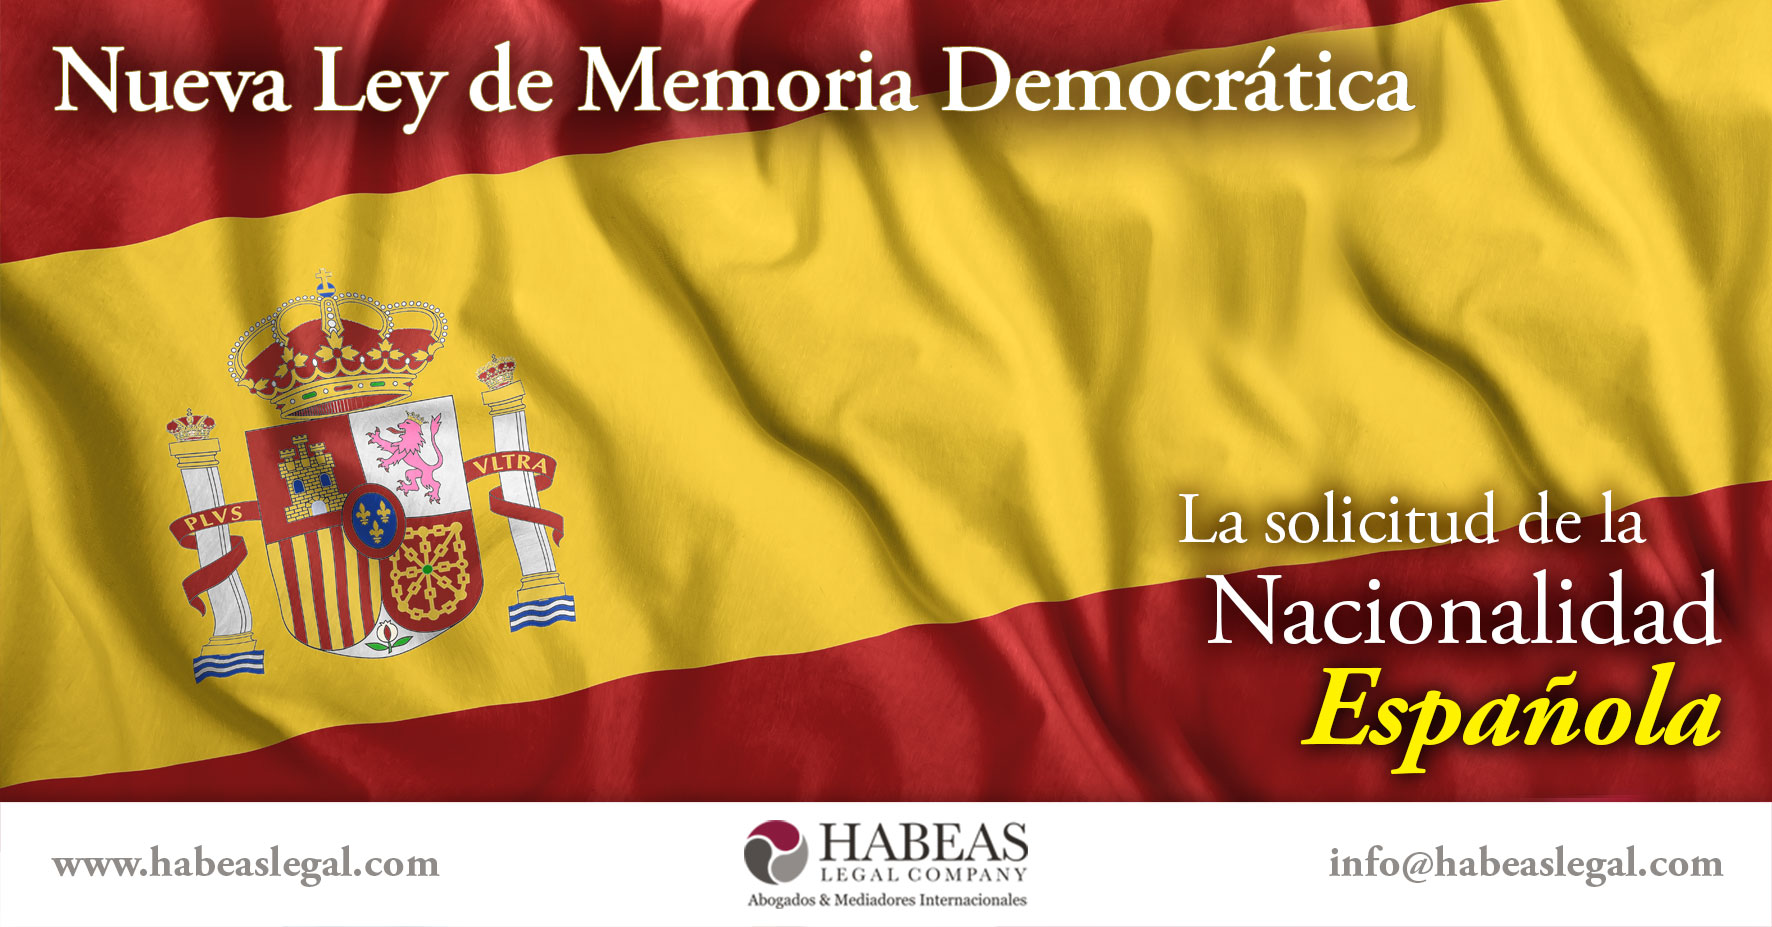 Nueva Ley Memoria Democratica Nacionalidad Espanola Habeas Legal - Obtención de la Nacionalidad Española Bot